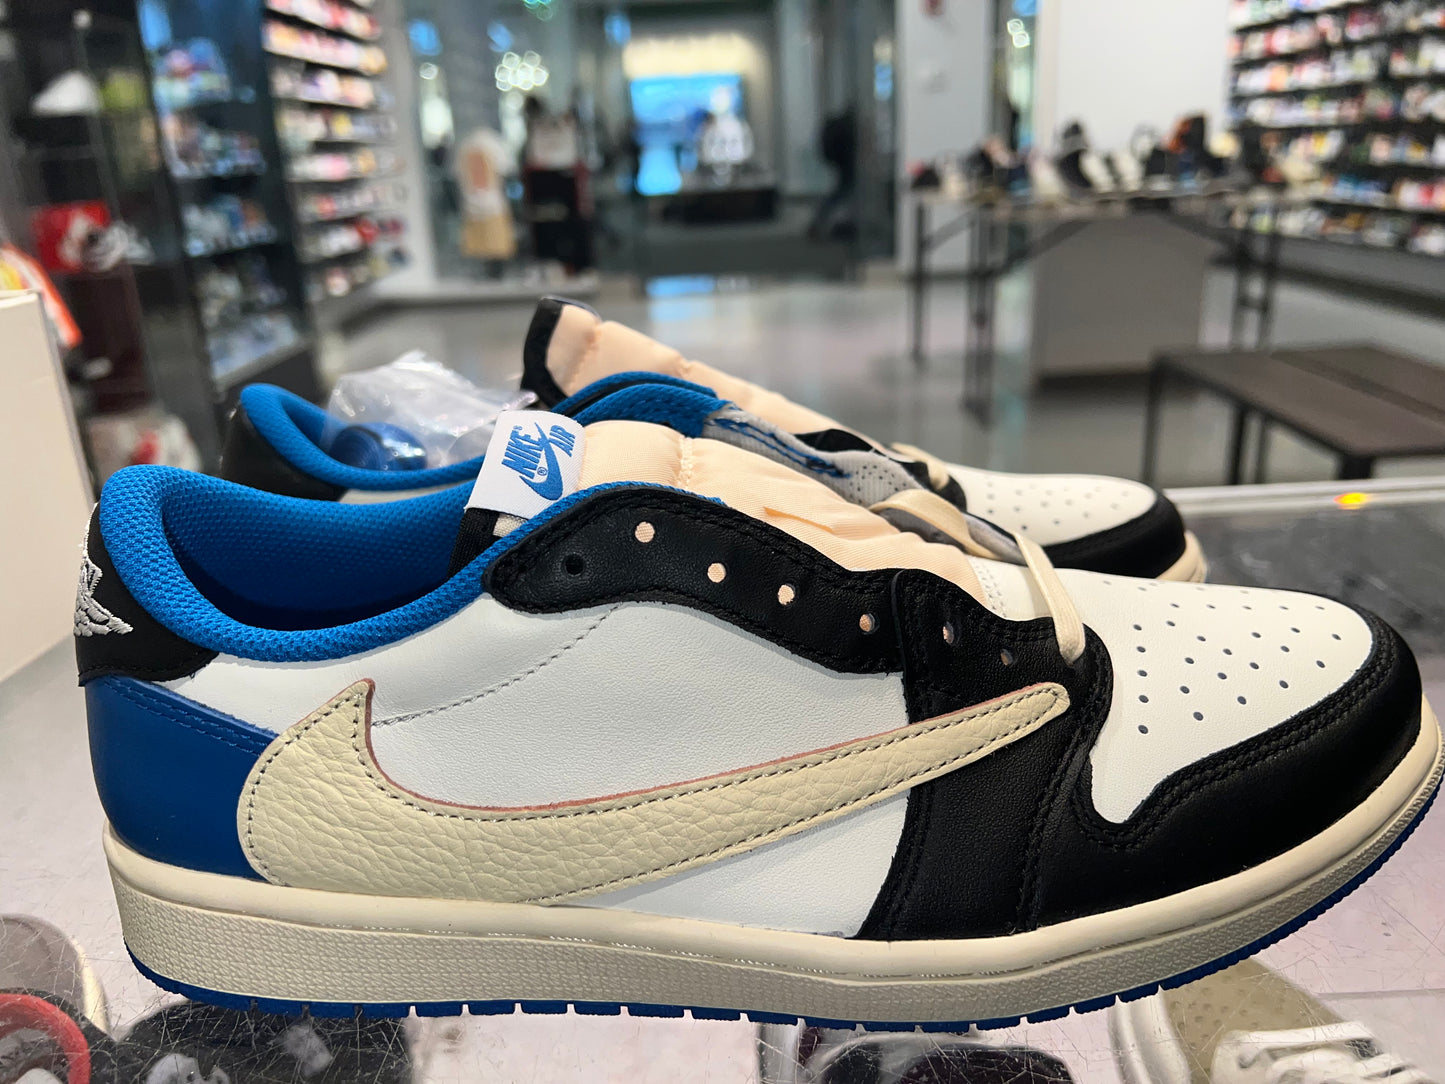 Size 9 Air Jordan 1 Low “Travis Scott Fragment” Brand New (Mall)